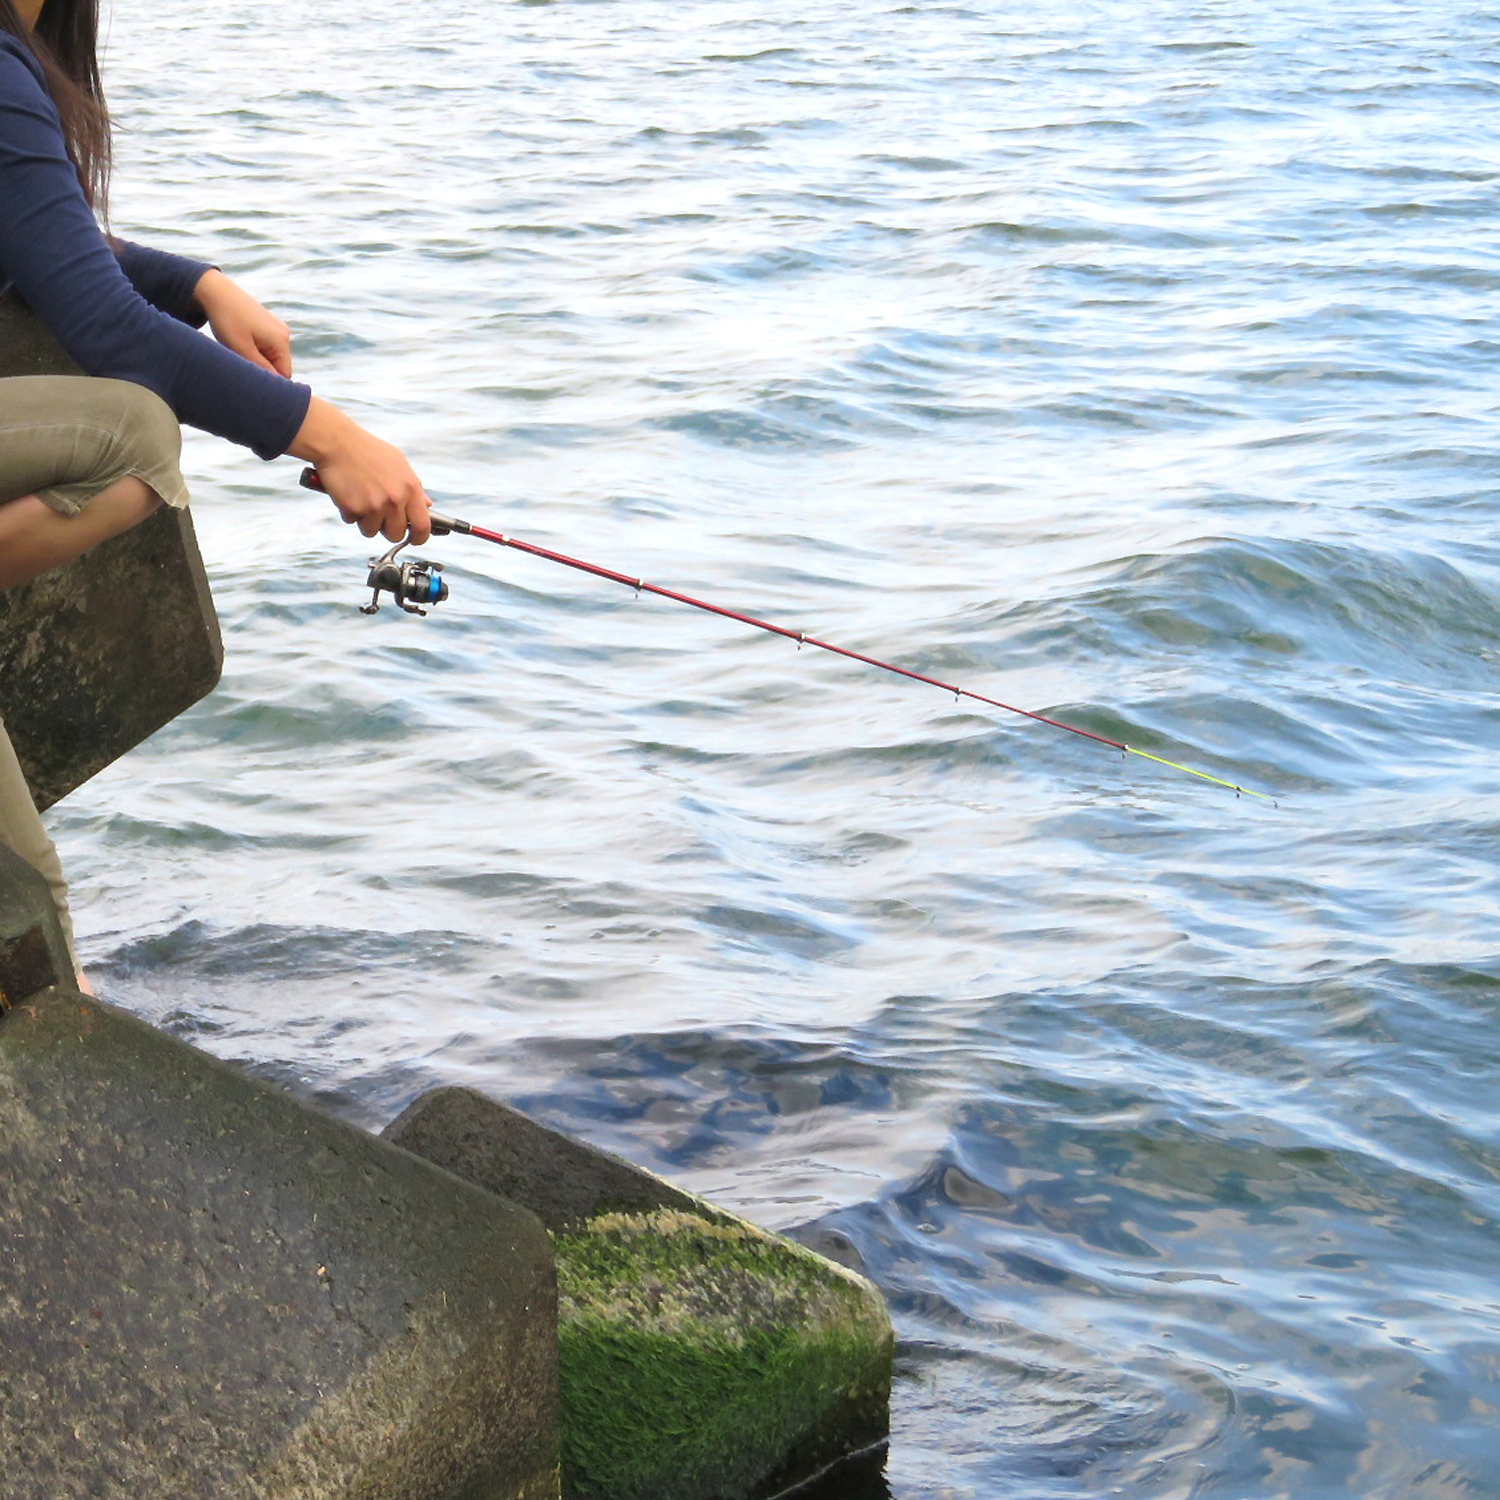 釣りガールはじめよう 初心者にやさしいゆるフィッシングのススメ 海 川 カヌー 釣り Be Pal キャンプ アウトドア 自然派生活の情報源ビーパル